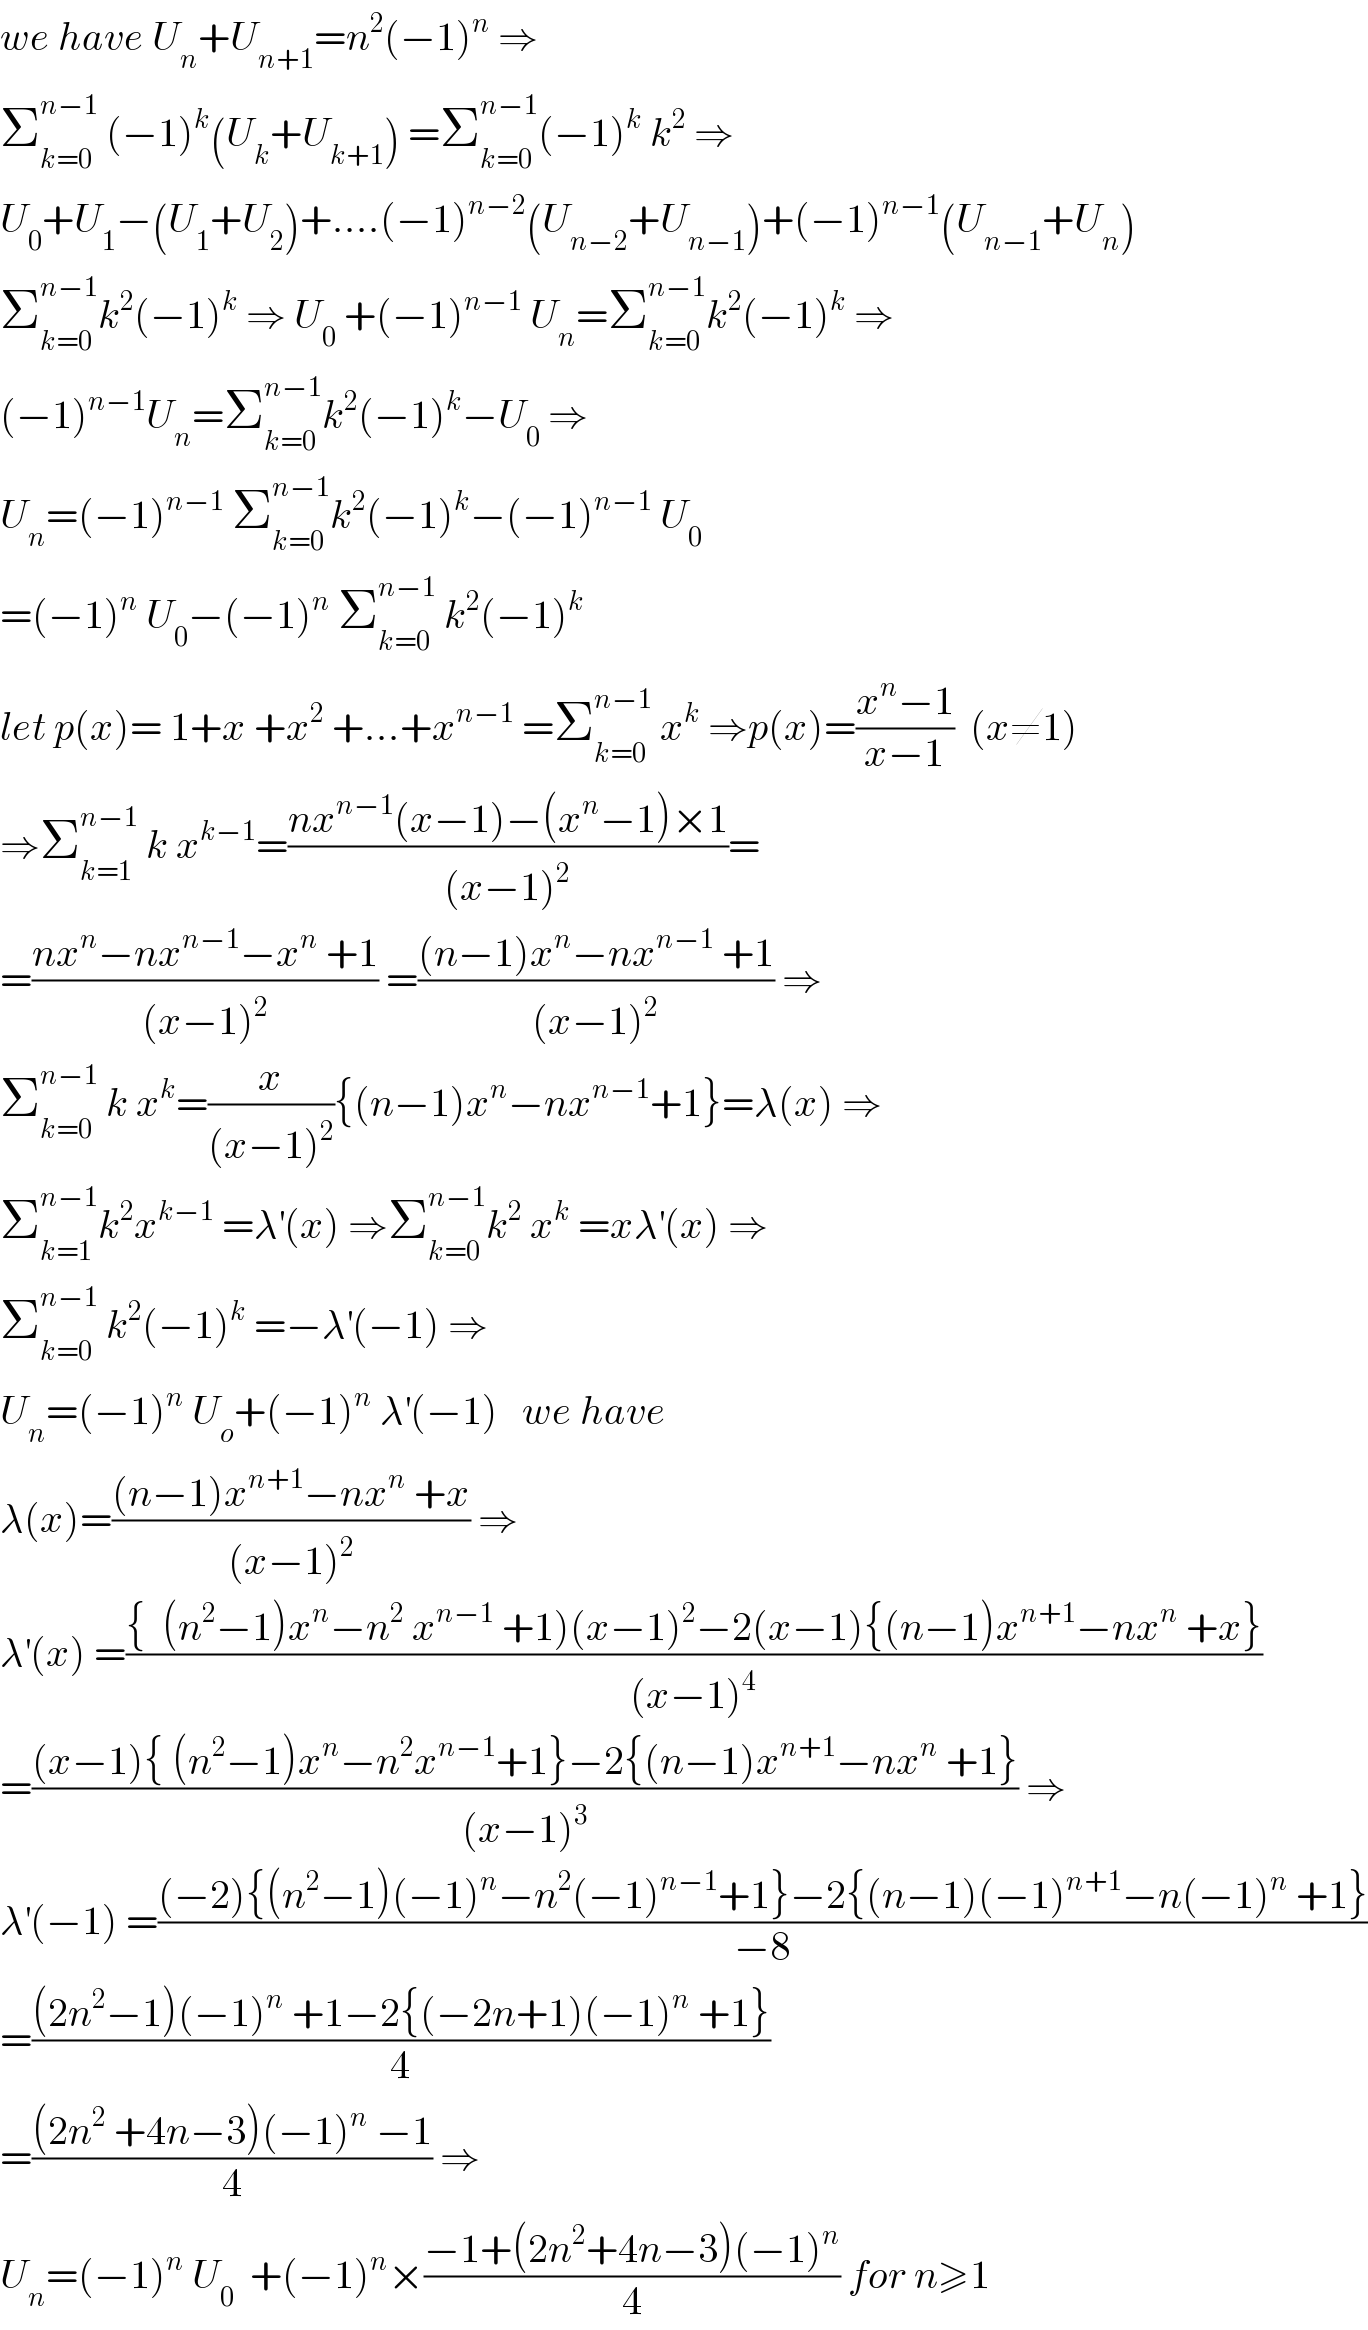 we have U_n +U_(n+1) =n^2 (−1)^n  ⇒  Σ_(k=0) ^(n−1)  (−1)^k (U_k +U_(k+1) ) =Σ_(k=0) ^(n−1) (−1)^k  k^2  ⇒  U_0 +U_1 −(U_1 +U_2 )+....(−1)^(n−2) (U_(n−2) +U_(n−1) )+(−1)^(n−1) (U_(n−1) +U_n )  Σ_(k=0) ^(n−1) k^2 (−1)^k  ⇒ U_0  +(−1)^(n−1)  U_n =Σ_(k=0) ^(n−1) k^2 (−1)^k  ⇒  (−1)^(n−1) U_n =Σ_(k=0) ^(n−1) k^2 (−1)^k −U_0  ⇒  U_n =(−1)^(n−1)  Σ_(k=0) ^(n−1) k^2 (−1)^k −(−1)^(n−1)  U_0   =(−1)^n  U_0 −(−1)^n  Σ_(k=0) ^(n−1)  k^2 (−1)^k   let p(x)= 1+x +x^2  +...+x^(n−1)  =Σ_(k=0) ^(n−1)  x^k  ⇒p(x)=((x^n −1)/(x−1))  (x≠1)  ⇒Σ_(k=1) ^(n−1)  k x^(k−1) =((nx^(n−1) (x−1)−(x^n −1)×1)/((x−1)^2 ))=  =((nx^n −nx^(n−1) −x^n  +1)/((x−1)^2 )) =(((n−1)x^n −nx^(n−1)  +1)/((x−1)^2 )) ⇒  Σ_(k=0) ^(n−1)  k x^k =(x/((x−1)^2 )){(n−1)x^n −nx^(n−1) +1}=λ(x) ⇒  Σ_(k=1) ^(n−1) k^2 x^(k−1)  =λ^′ (x) ⇒Σ_(k=0) ^(n−1) k^2  x^k  =xλ^′ (x) ⇒  Σ_(k=0) ^(n−1)  k^2 (−1)^k  =−λ^′ (−1) ⇒  U_n =(−1)^n  U_o +(−1)^n  λ^′ (−1)   we have   λ(x)=(((n−1)x^(n+1) −nx^n  +x)/((x−1)^2 )) ⇒  λ^′ (x) =(({  (n^2 −1)x^n −n^2  x^(n−1)  +1)(x−1)^2 −2(x−1){(n−1)x^(n+1) −nx^n  +x})/((x−1)^4 ))  =(((x−1){ (n^2 −1)x^n −n^2 x^(n−1) +1}−2{(n−1)x^(n+1) −nx^n  +1})/((x−1)^3 )) ⇒  λ^′ (−1) =(((−2){(n^2 −1)(−1)^n −n^2 (−1)^(n−1) +1}−2{(n−1)(−1)^(n+1) −n(−1)^n  +1})/(−8))  =(((2n^2 −1)(−1)^n  +1−2{(−2n+1)(−1)^n  +1})/4)  =(((2n^2  +4n−3)(−1)^n  −1)/4) ⇒  U_n =(−1)^n  U_0   +(−1)^n ×((−1+(2n^2 +4n−3)(−1)^n )/4) for n≥1  